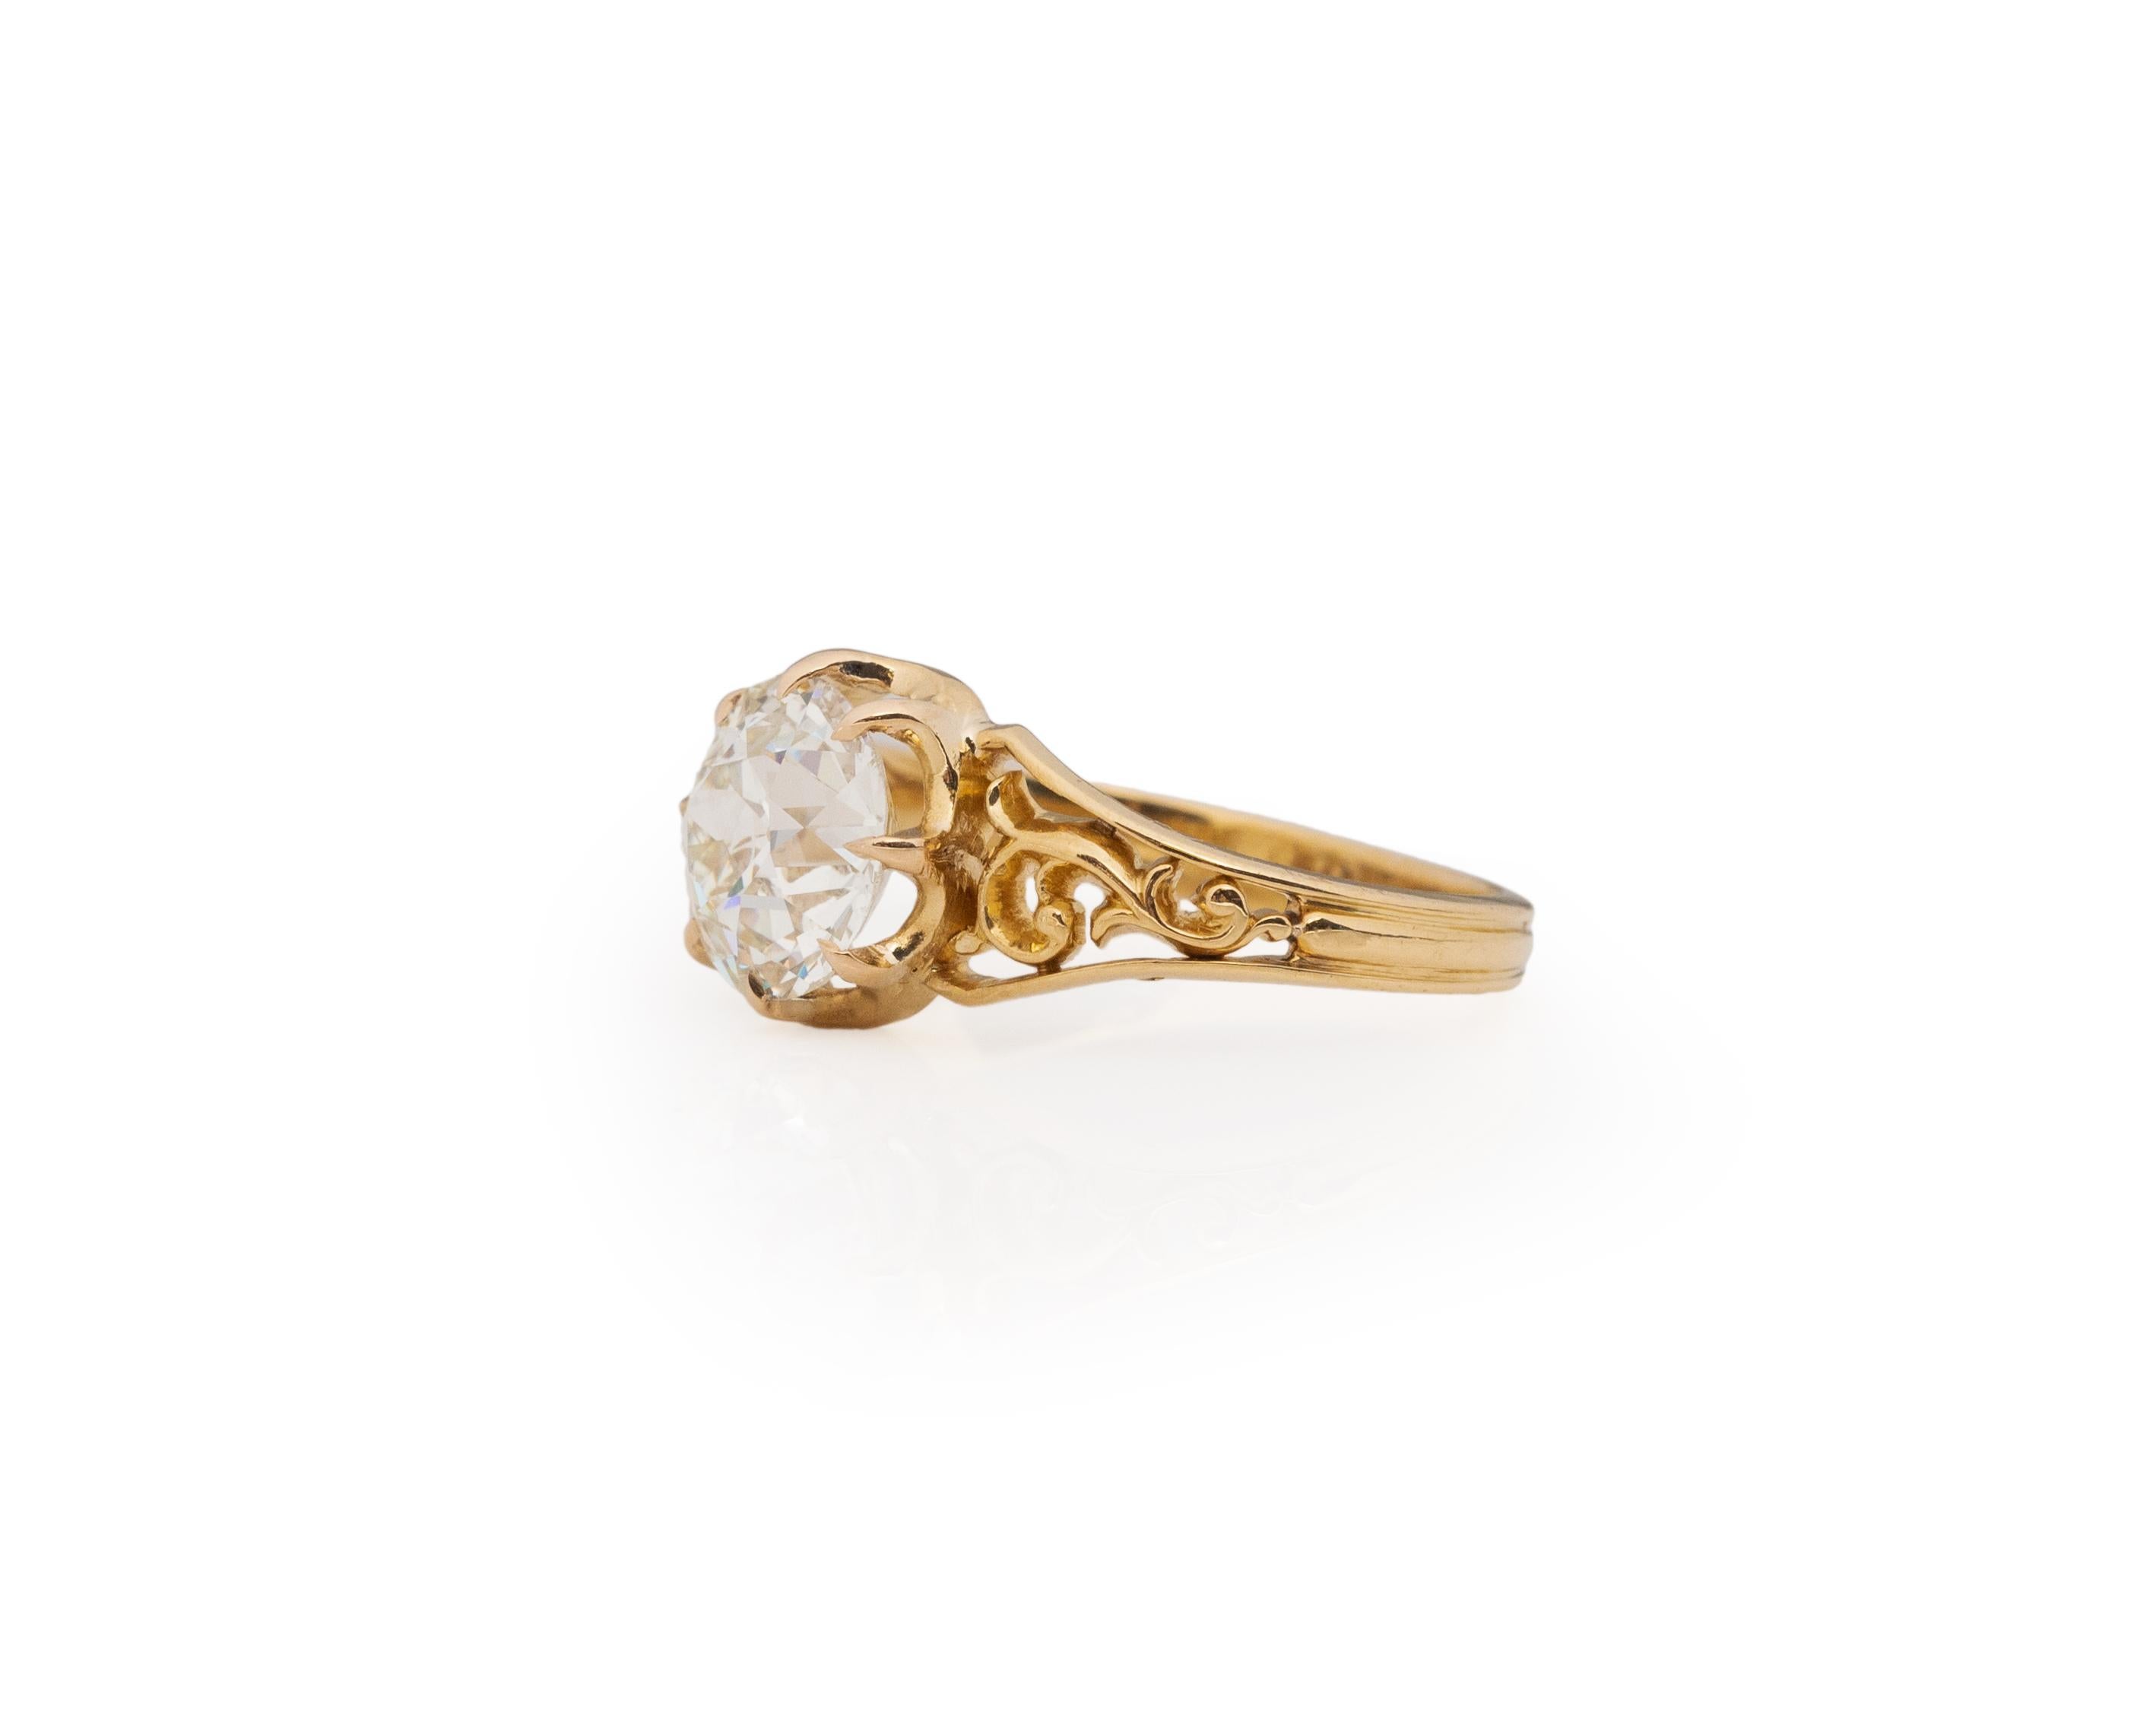 Old European Cut Certified GIA 2.31 Carat Edwardian Diamond 14 Karat Yellow Gold Engagement Ring